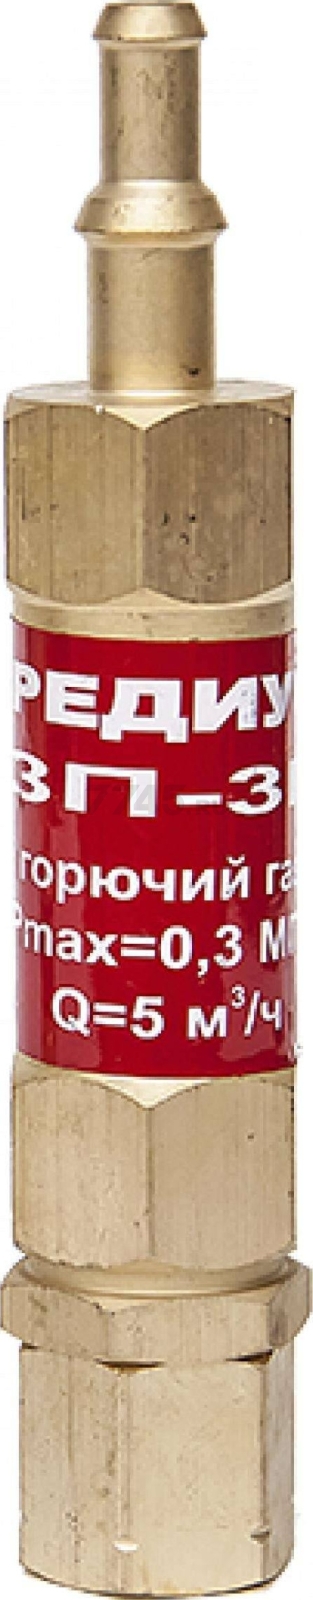 Затвор предохранительный РЕДИУС ЗП -3Г-113 (06202)